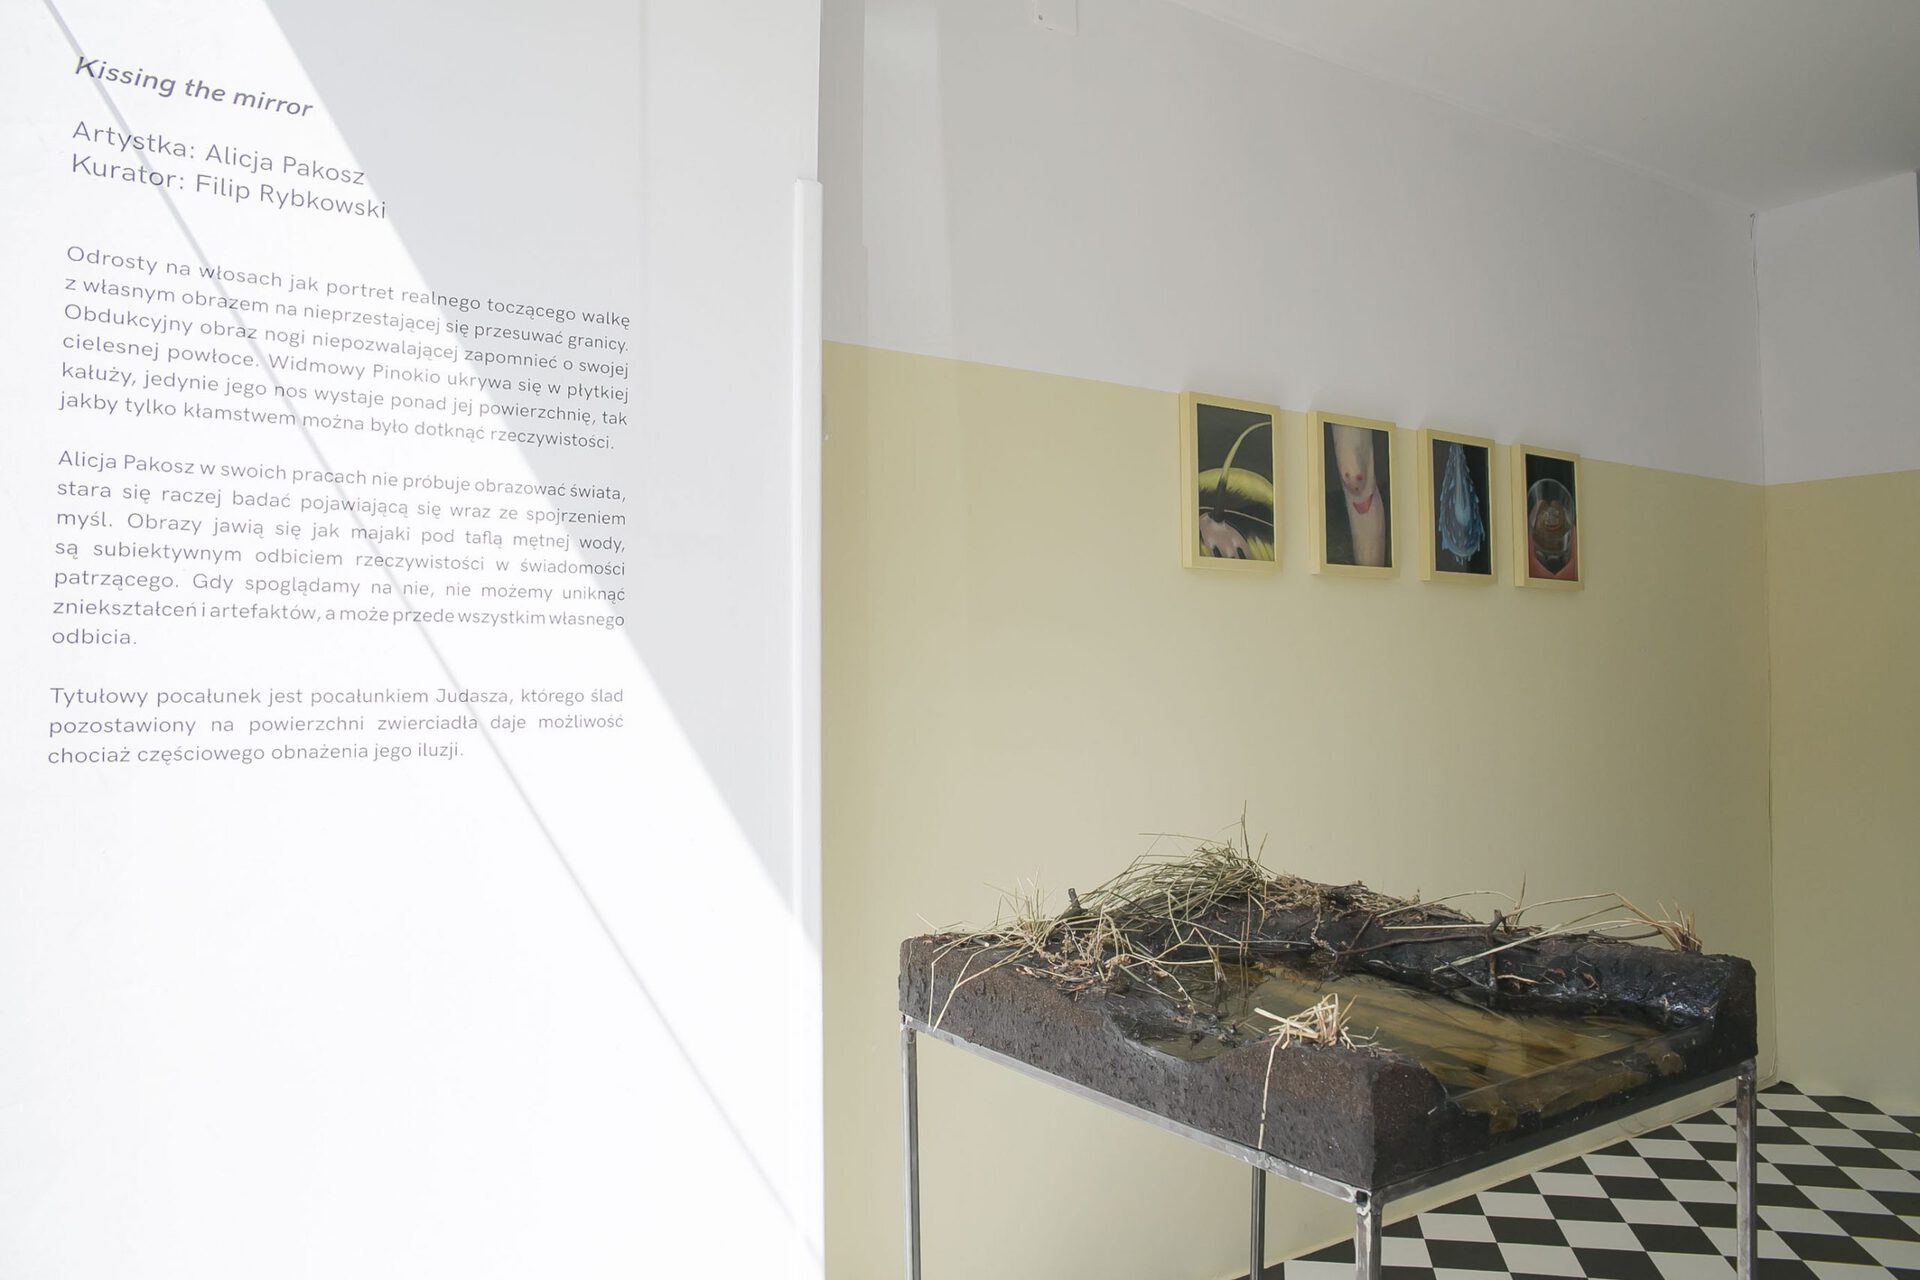 Alicja Pakosz, Kissing the mirror, 2021, exhibiton space